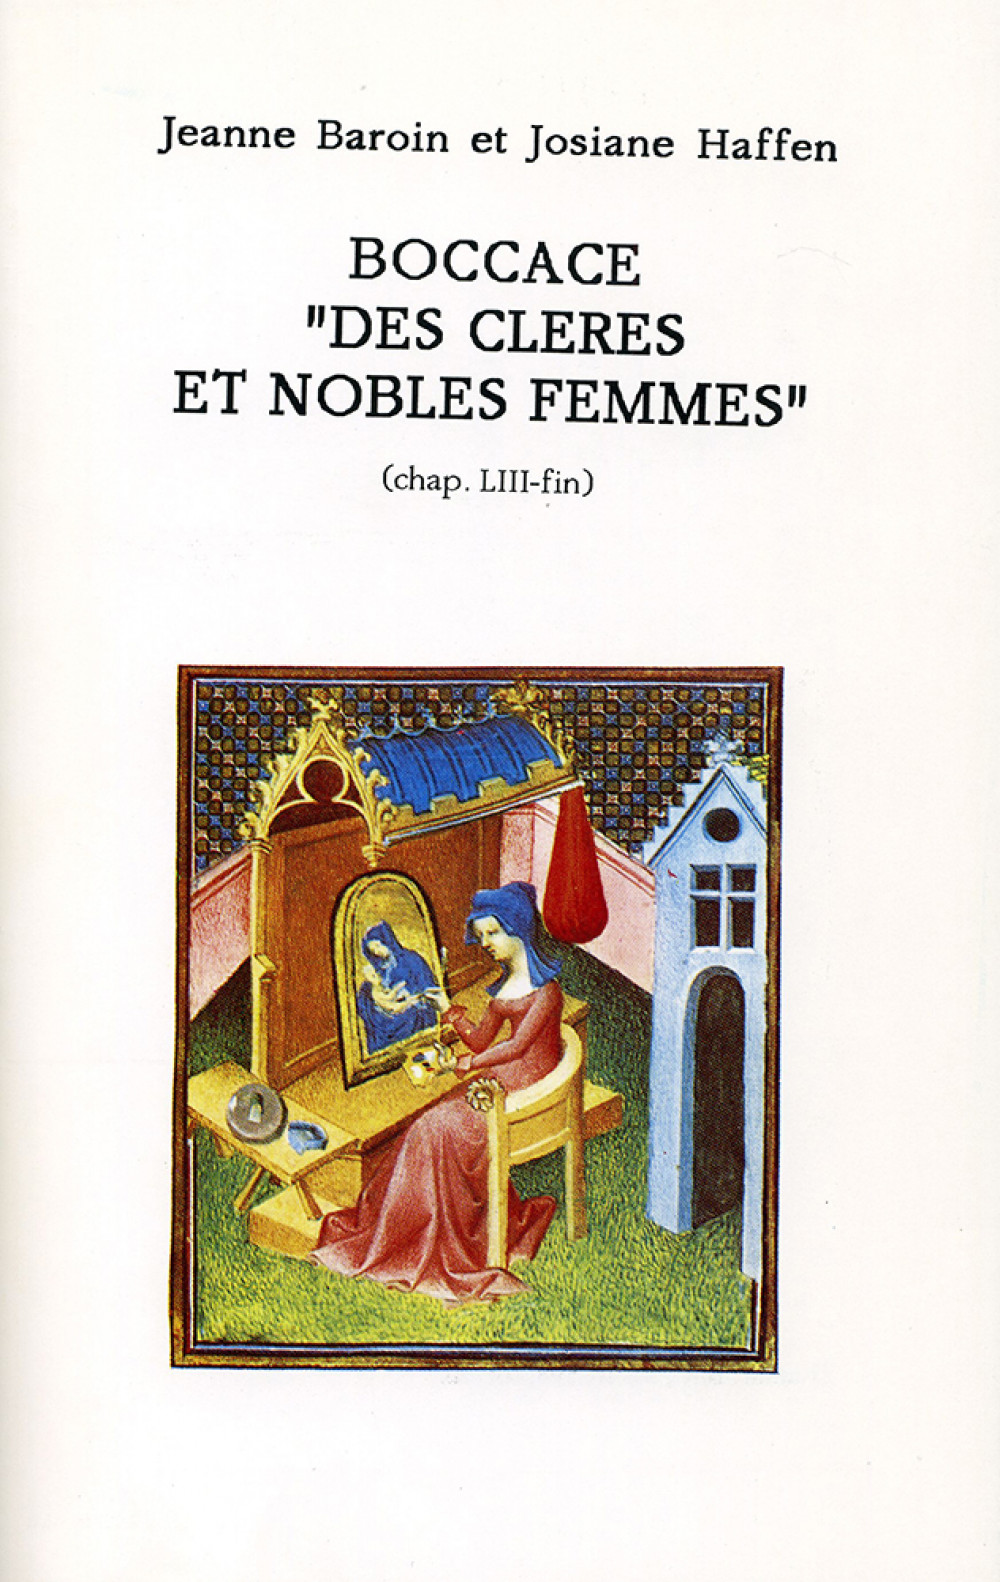 Boccace "Des cleres et nobles femmes" (chap.LIII-fin)